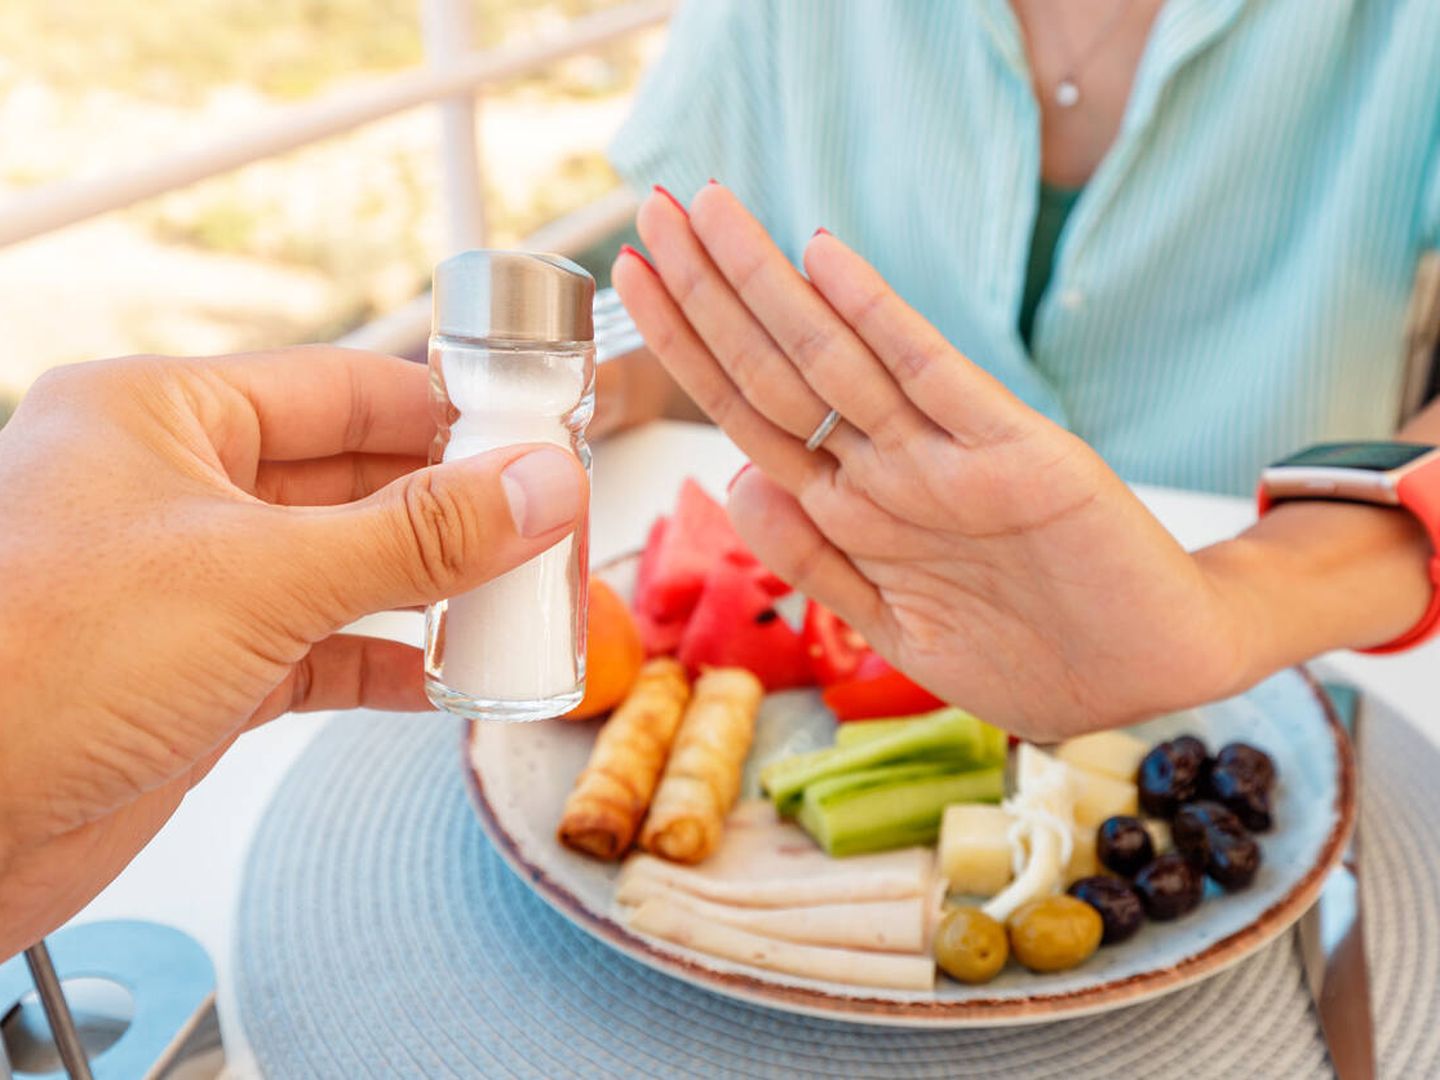 Reducir la sal en la dieta tiene numerosos beneficios para la salud. (iStock)